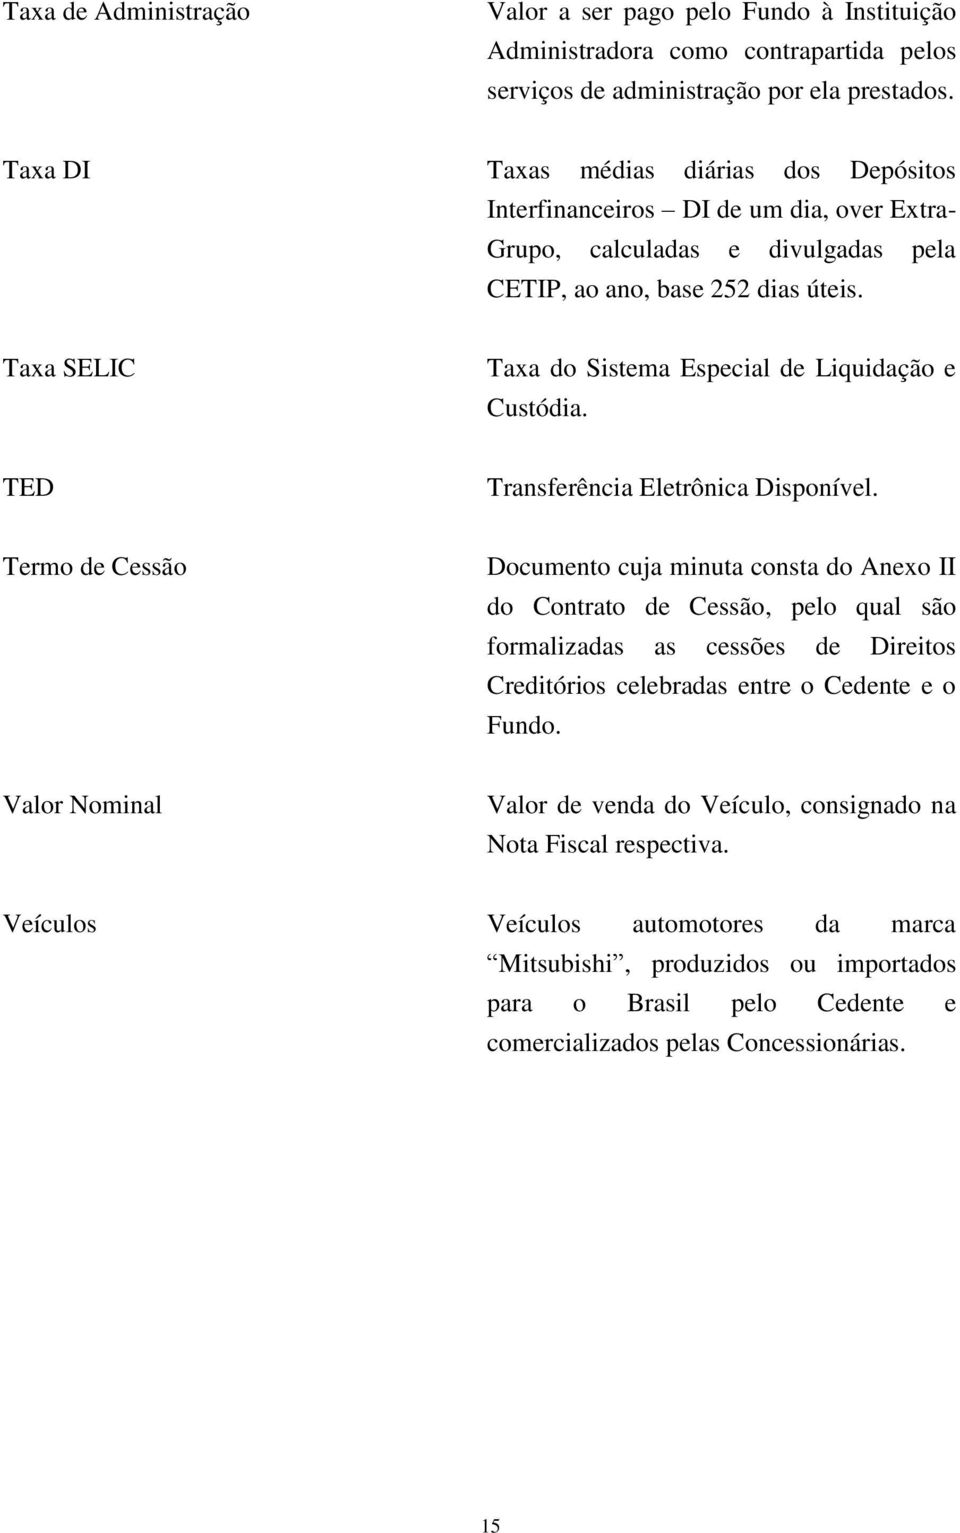 Taxa SELIC Taxa do Sistema Especial de Liquidação e Custódia. TED Transferência Eletrônica Disponível.